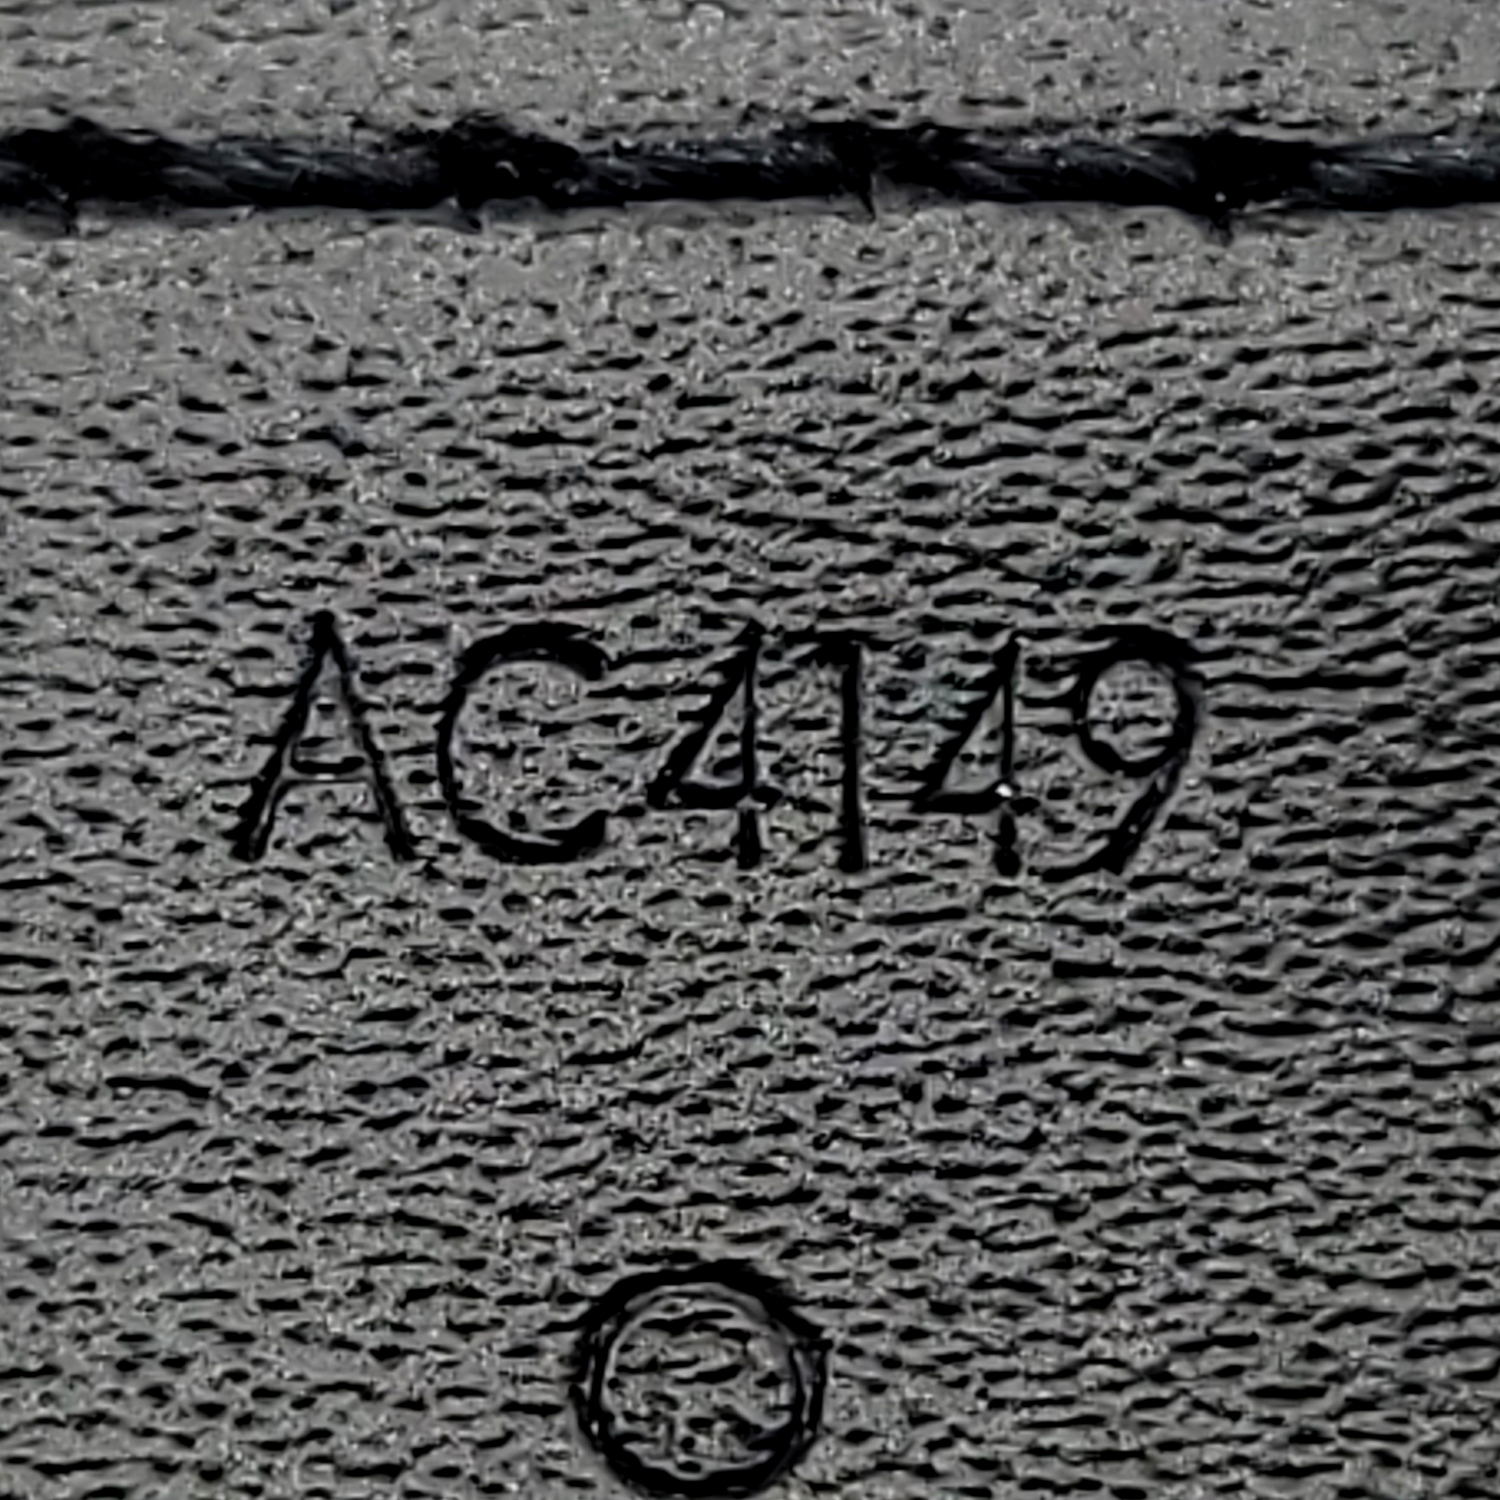 Louis Vuitton LV Initiales 40mm Reversible Belt Graphite Damier Graphite. Size 85 cm